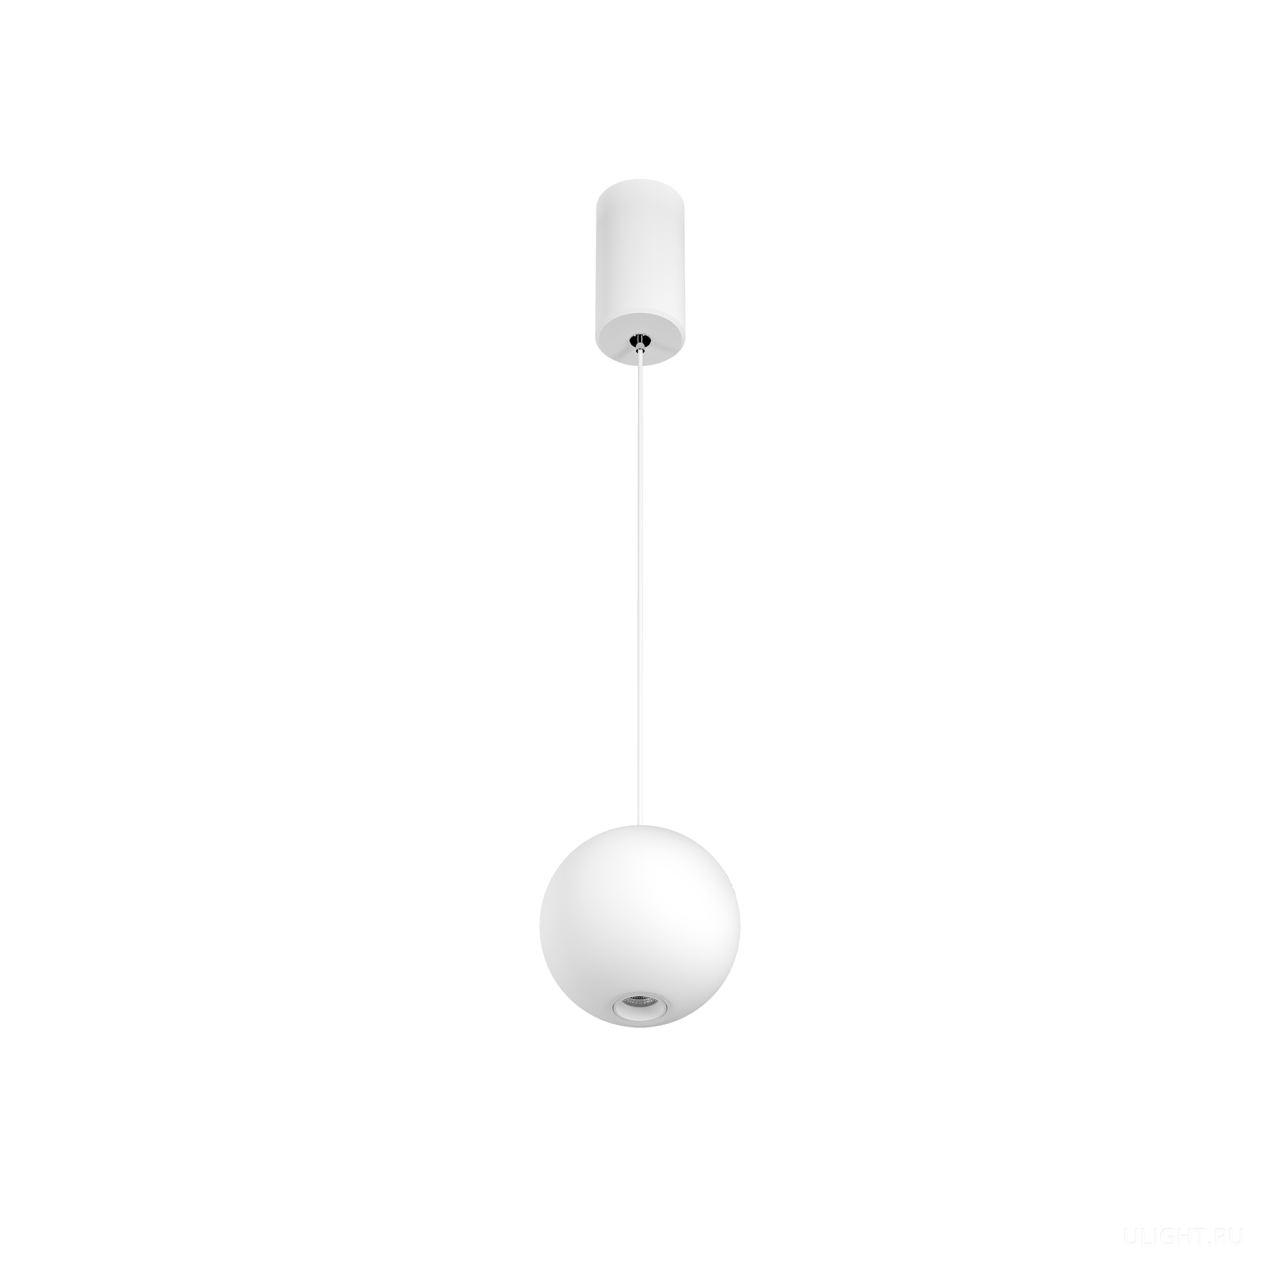 Подвесной светодиодный светильник предназначен для освещения торговых, офисных, жилых и других помещений. Светильник имеет высокую светоотдачу и позволяет экономить до 90% электроэнергии, потребляемой лампами накаливания той же яркости. Мгновенное включение. Регулировка высоты подвеса без специального инструмента.